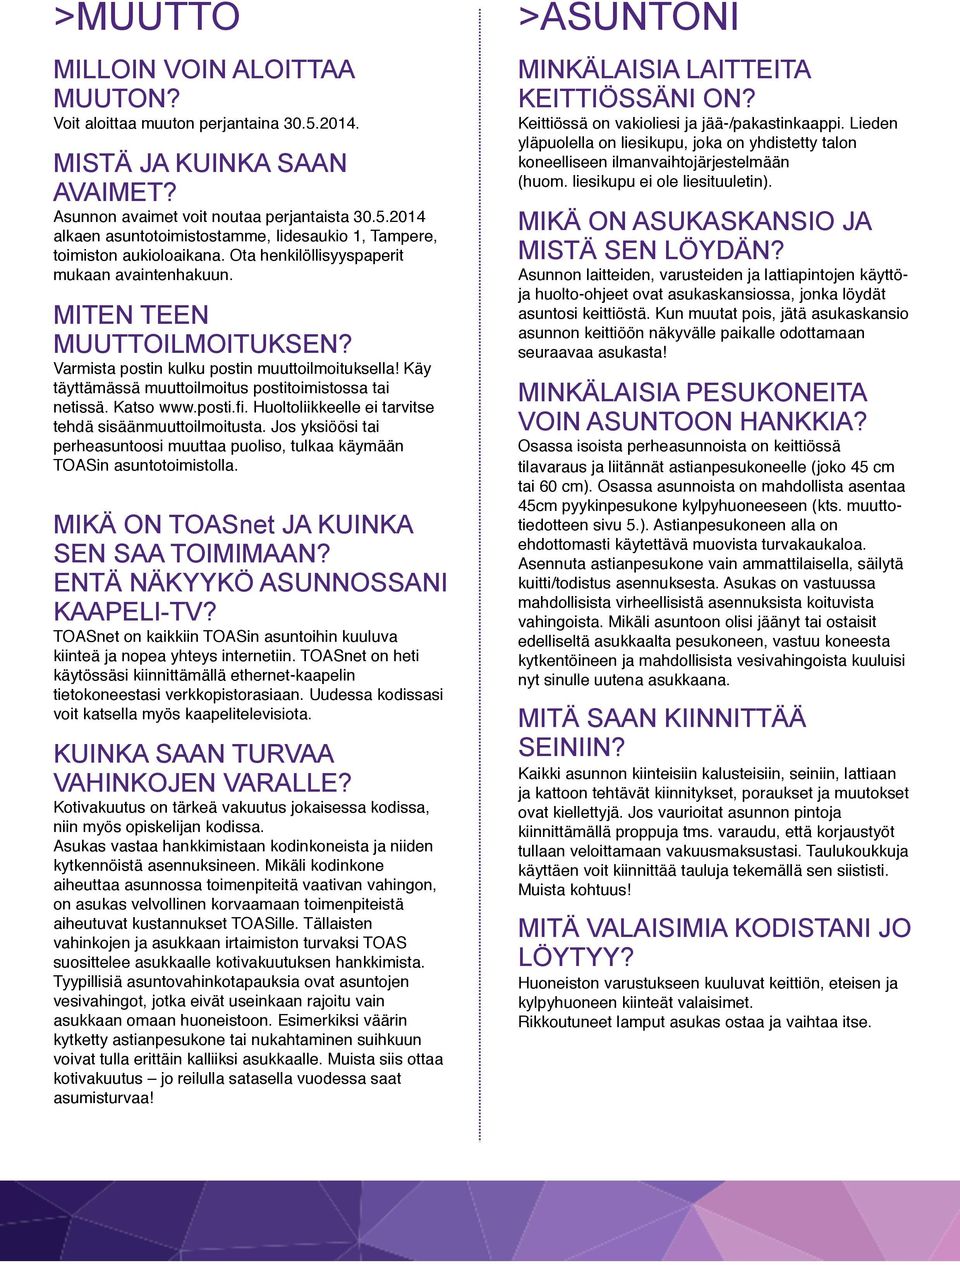 posti.fi. Huoltoliikkeelle ei tarvitse tehdä sisäänmuuttoilmoitusta. Jos yksiöösi tai perheasuntoosi muuttaa puoliso, tulkaa käymään TOASin asuntotoimistolla.